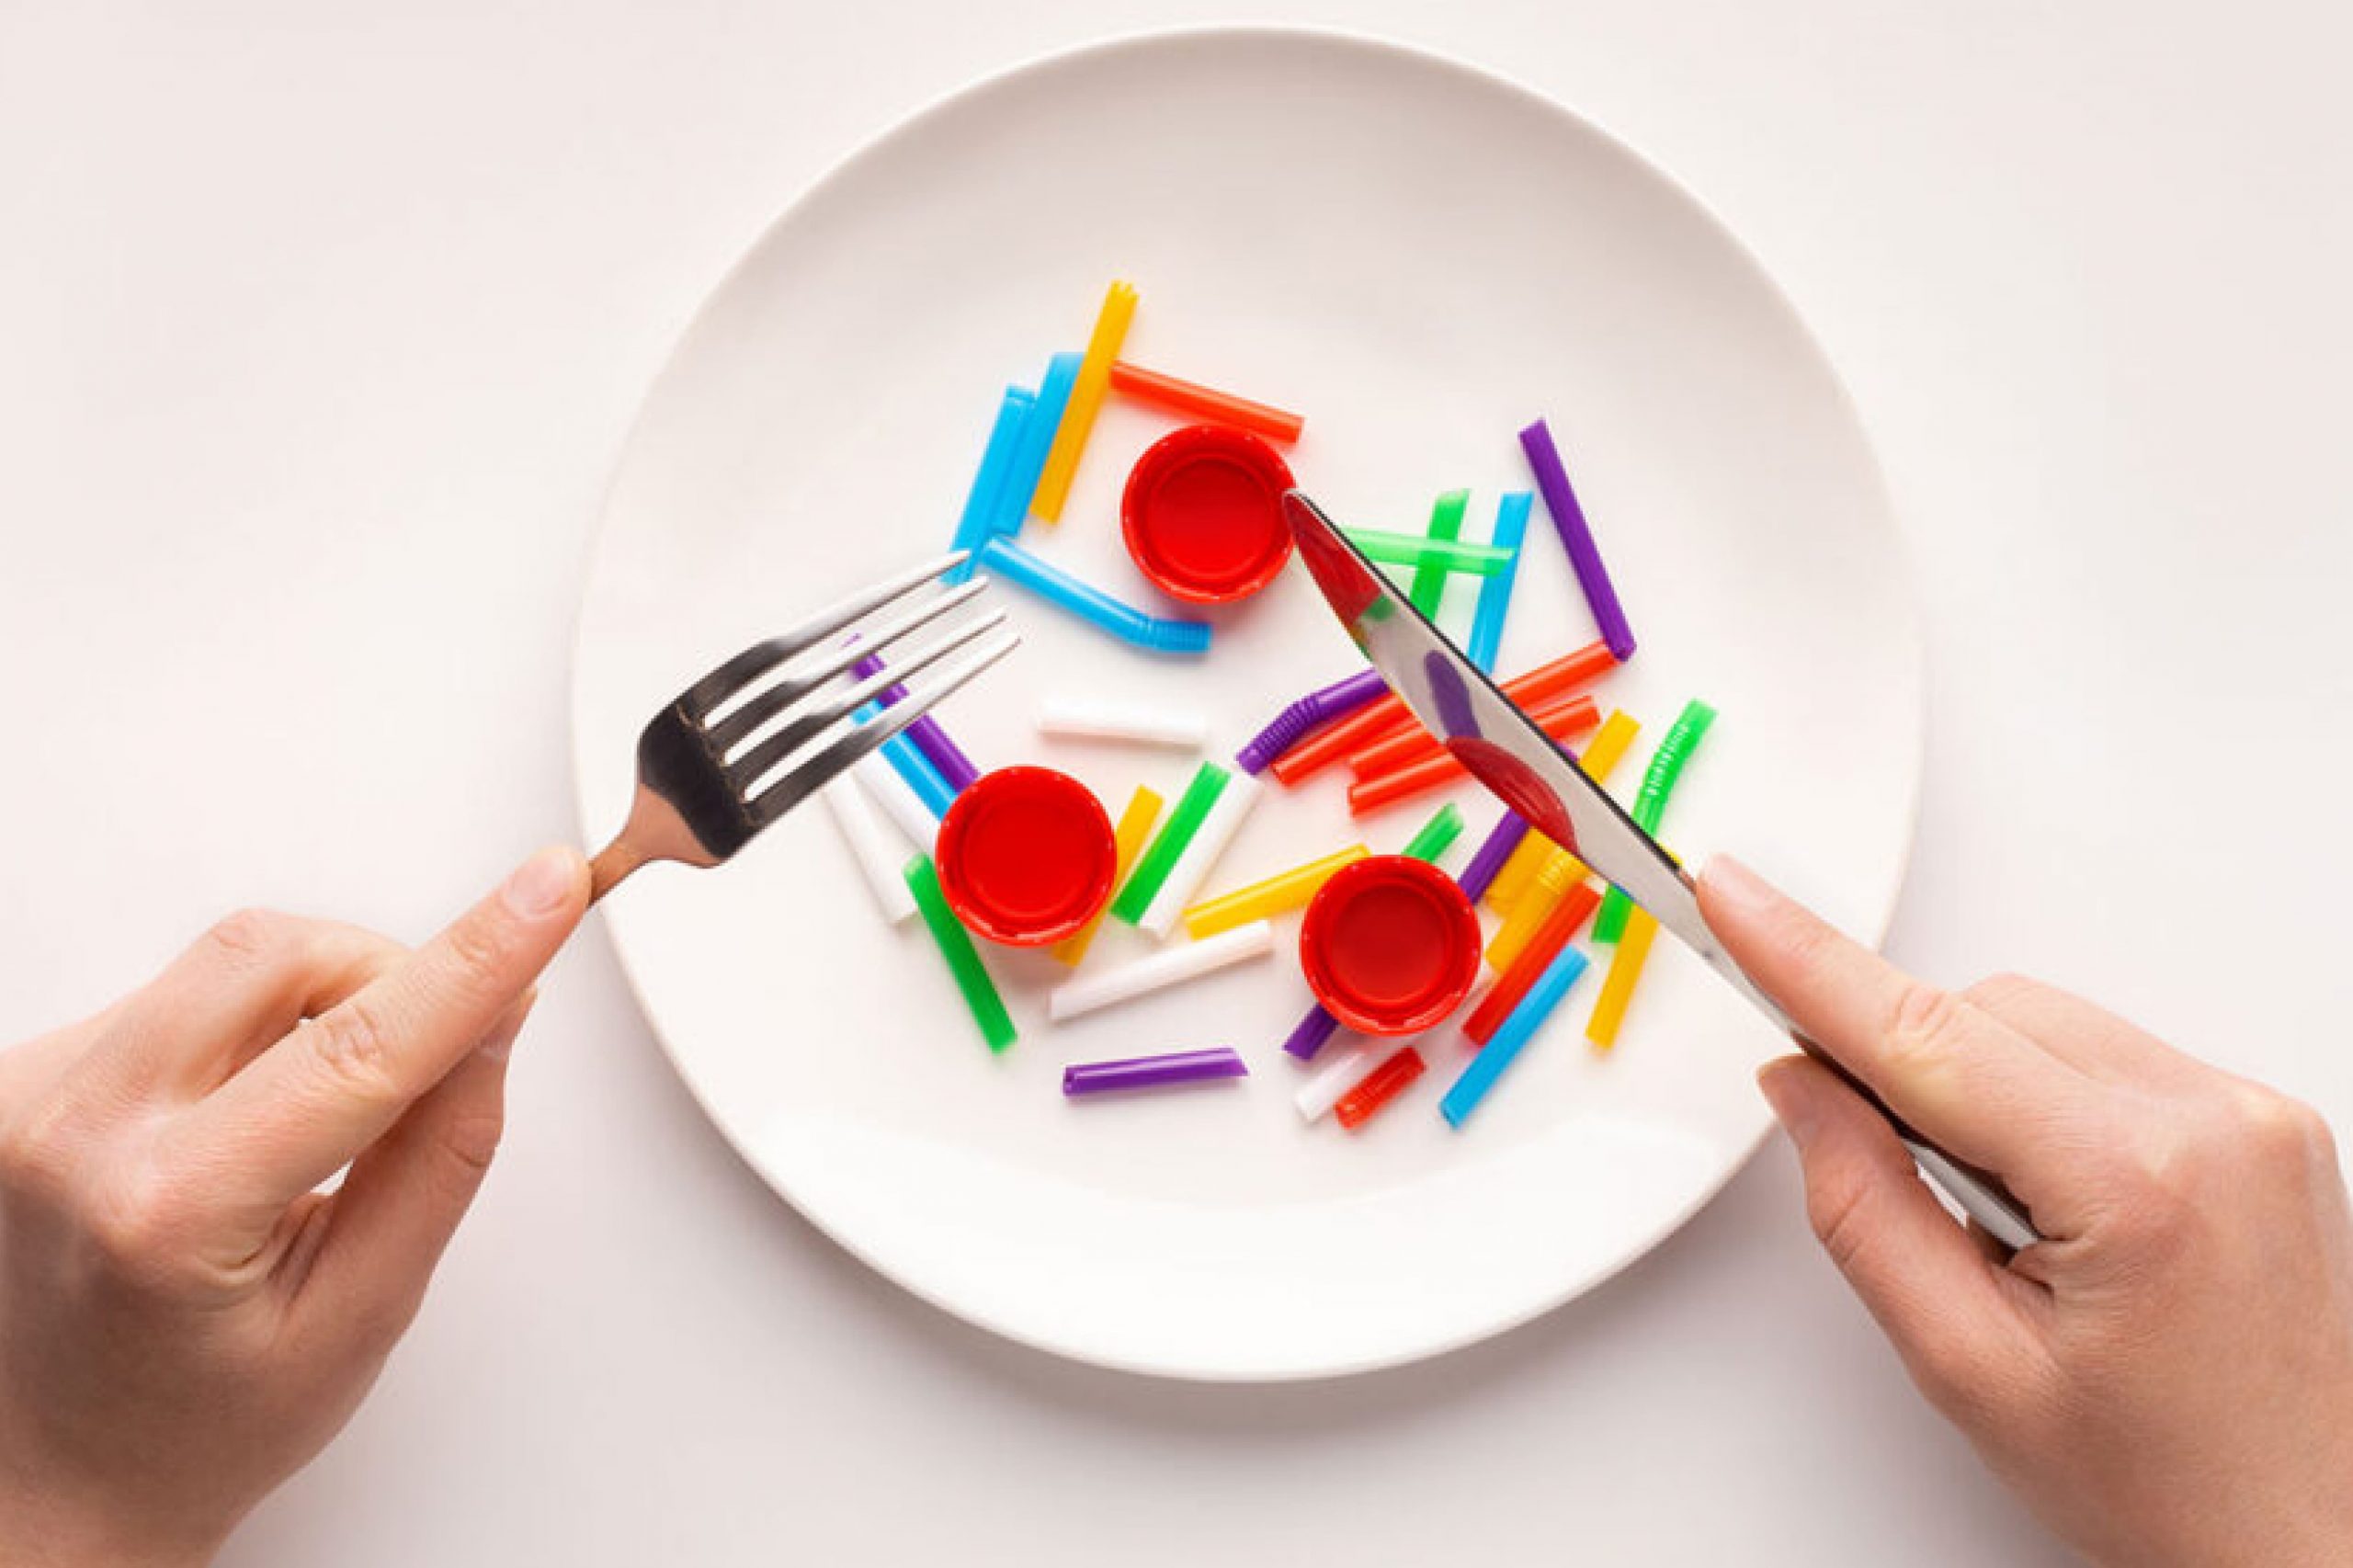  کھانے میں پلاسٹک: آپ اسے جانے بغیر اسے استعمال کر رہے ہیں۔ اب معلوم کریں!